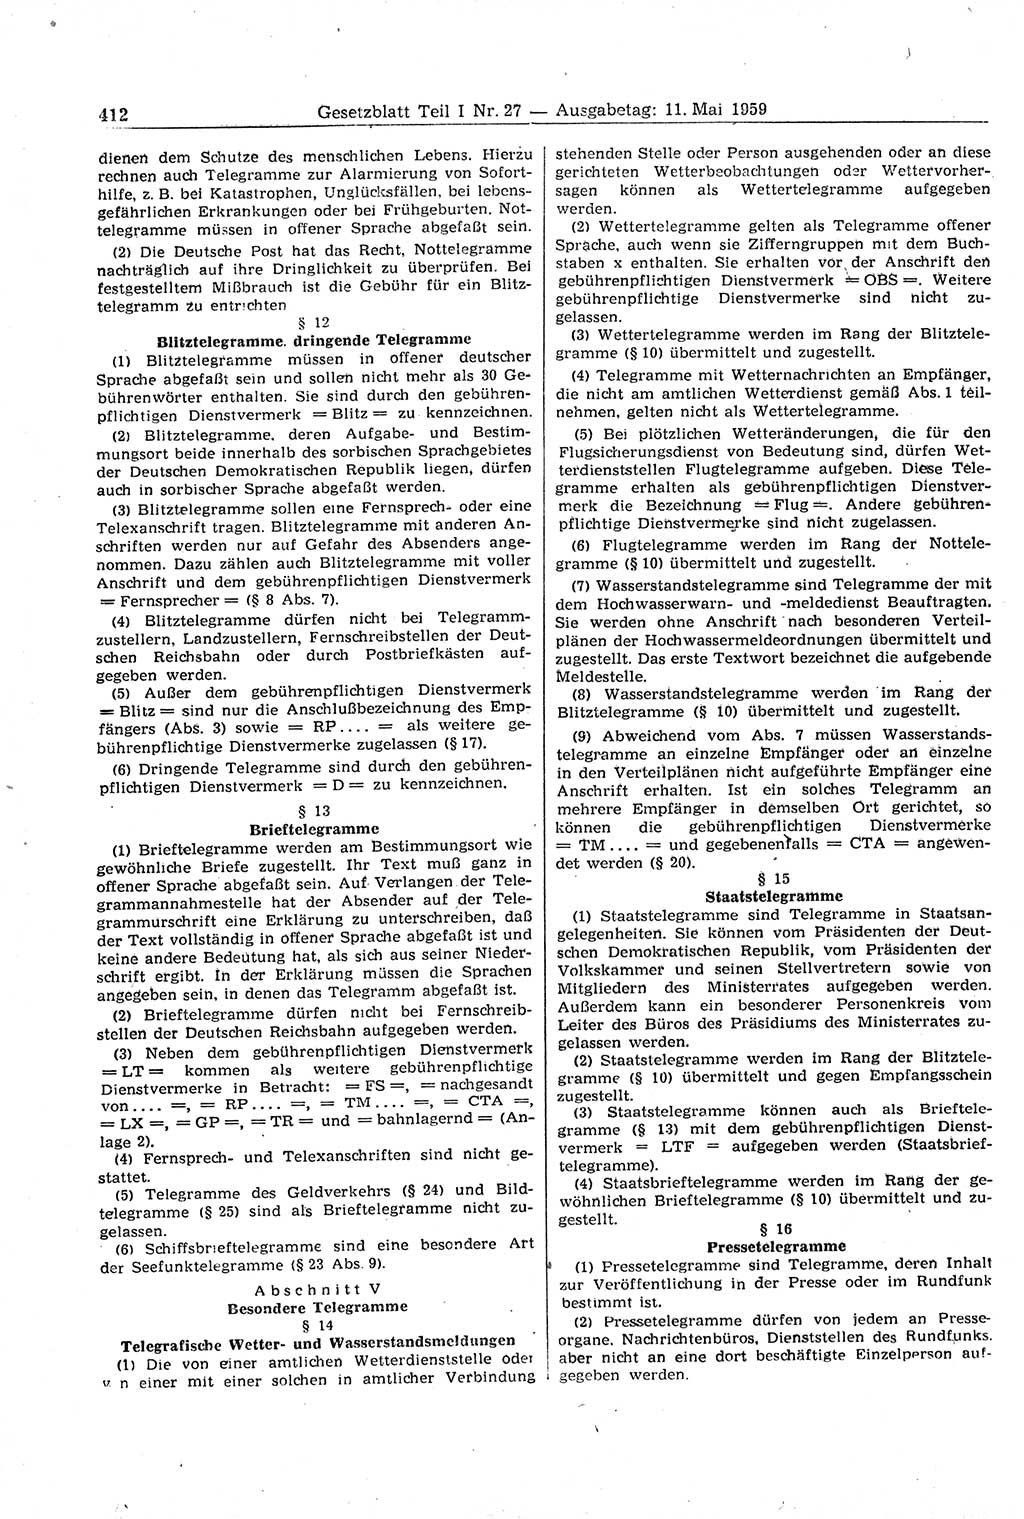 Gesetzblatt (GBl.) der Deutschen Demokratischen Republik (DDR) Teil Ⅰ 1959, Seite 412 (GBl. DDR Ⅰ 1959, S. 412)